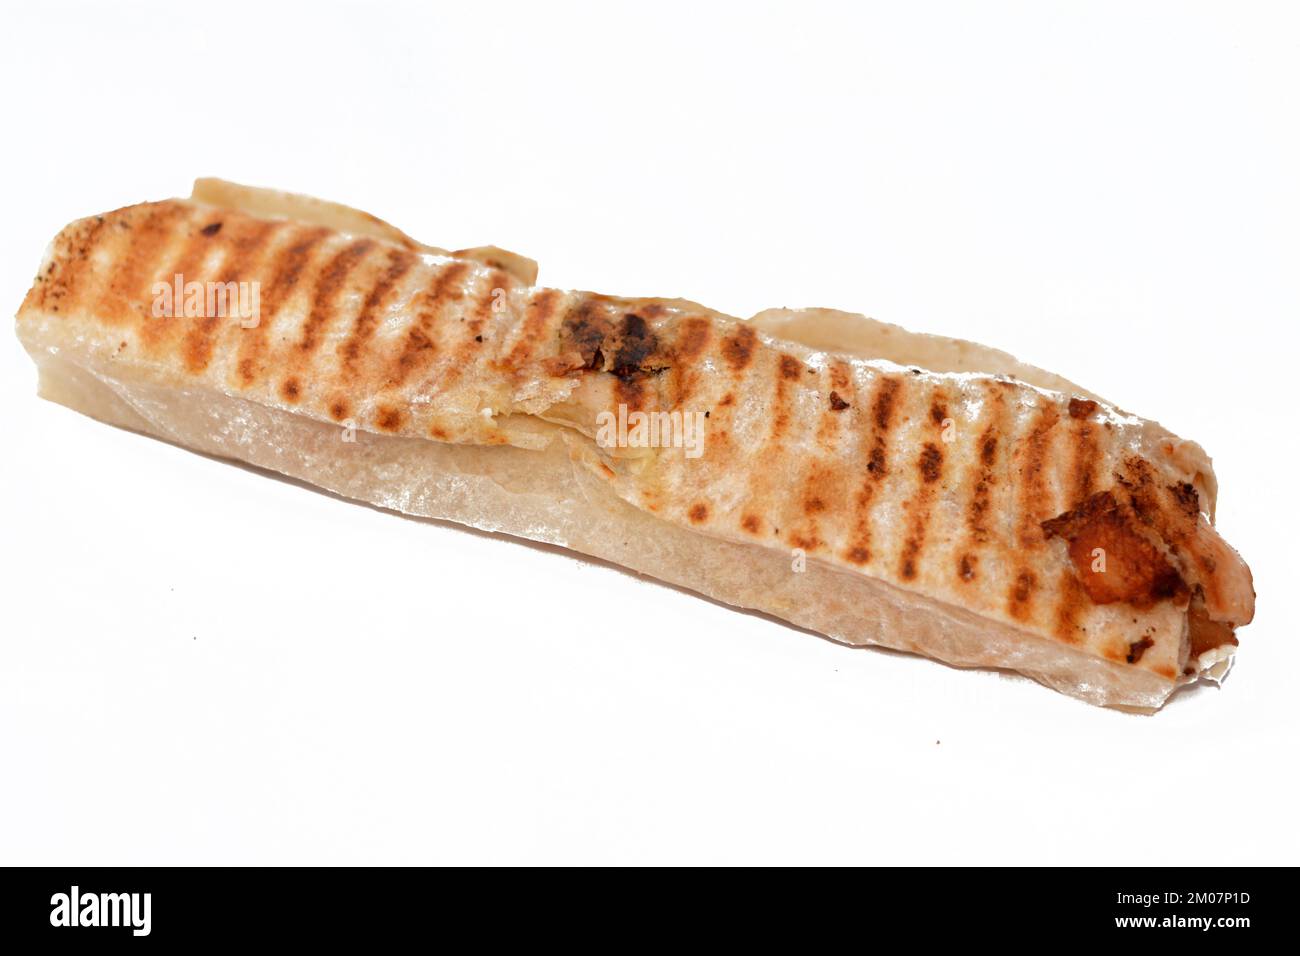 Syrisches Rezept Küche Hintergrund, Huhn Shawerma oder Shawarma Tortilla Wrap mit Zwiebeln, Tomaten, Salat und Knoblauchsauce in syrischem Brot isoliert auf Stockfoto